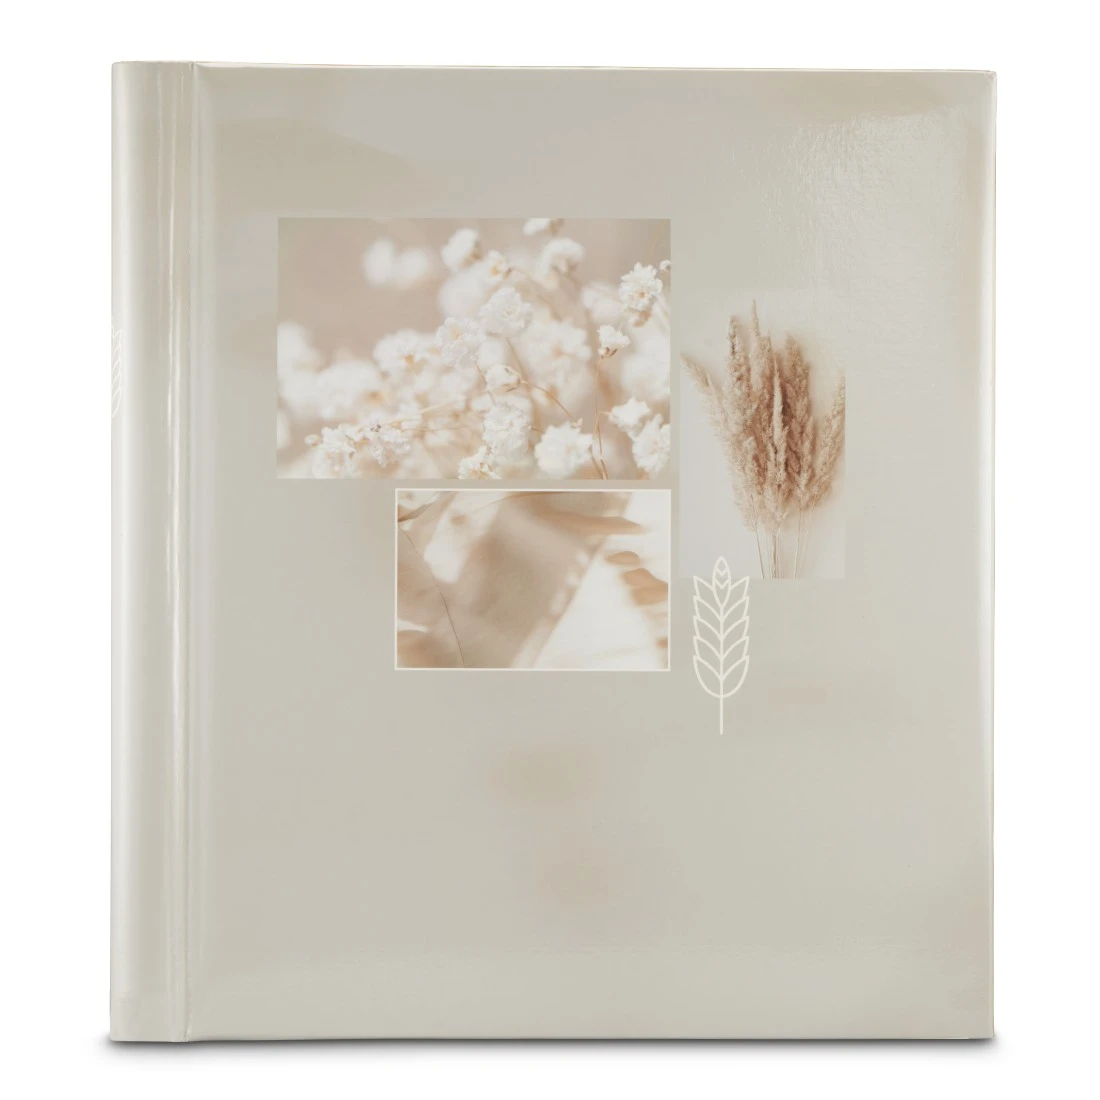 Selbstklebe-Album “Singo II“, 28x31 cm, 20 weiße Seiten, Cotton | Hama